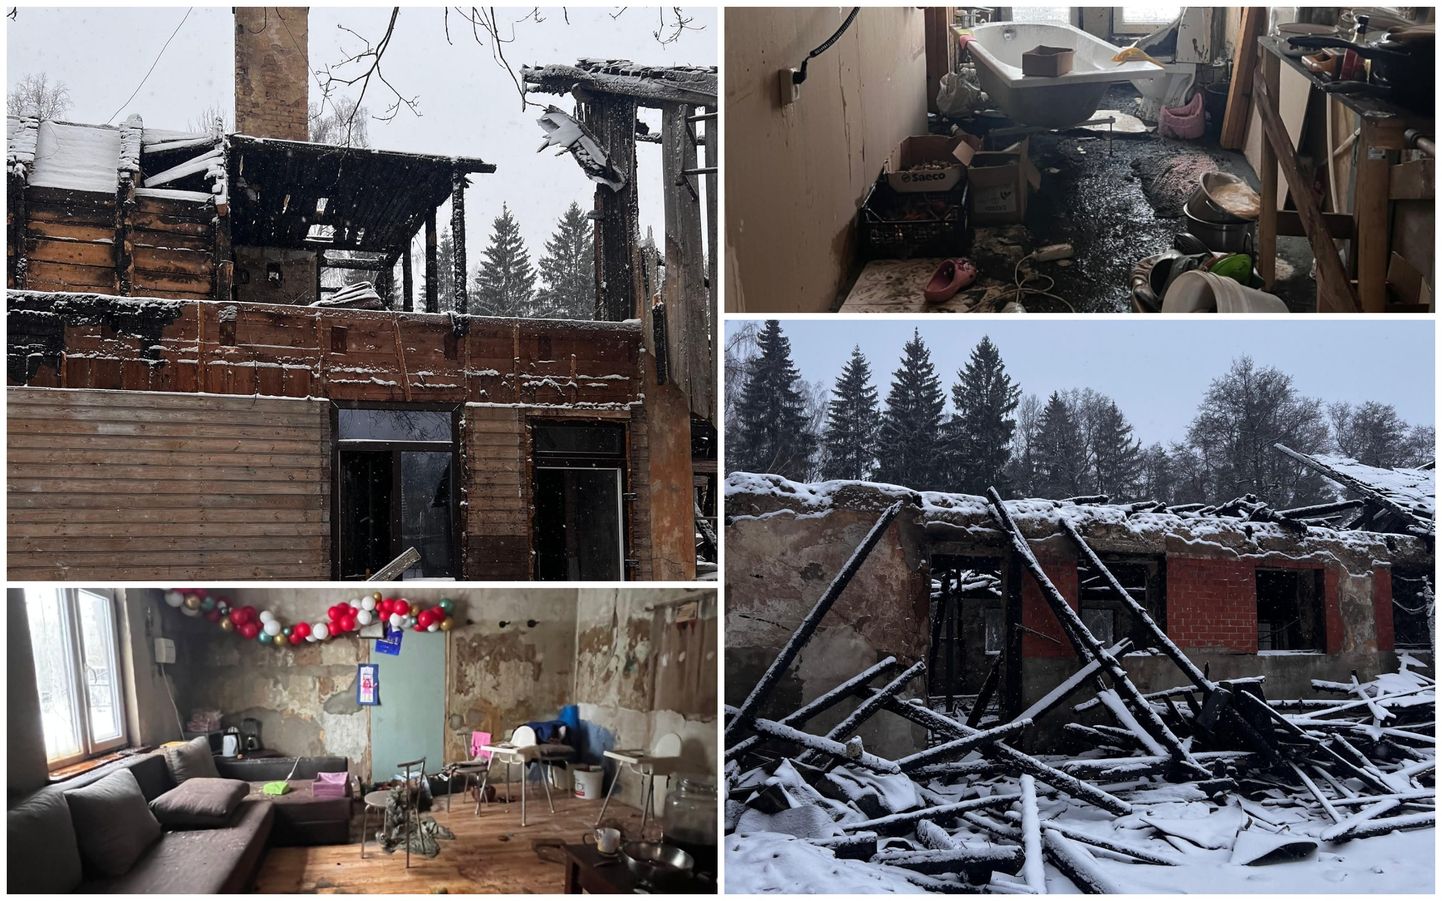 пятницу, 12 января, в Елгавском крае в поселке Яунпетерниеки произошел пожар - сгорел частный дом.